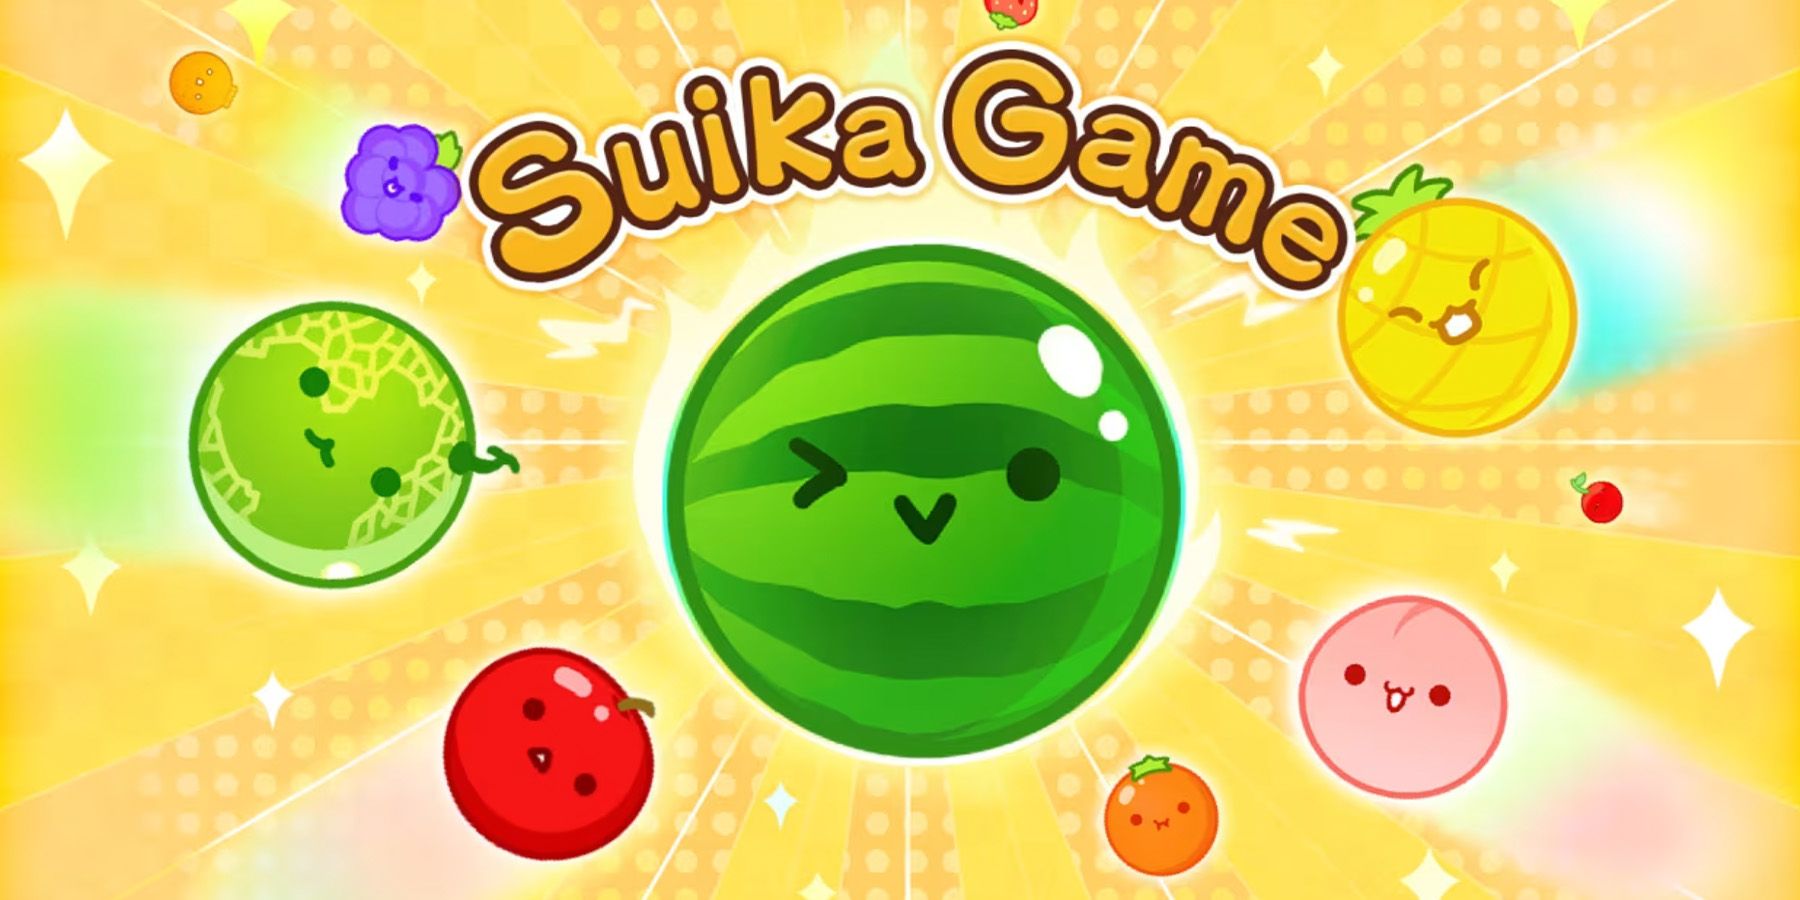 Arte promocional do jogo Suika